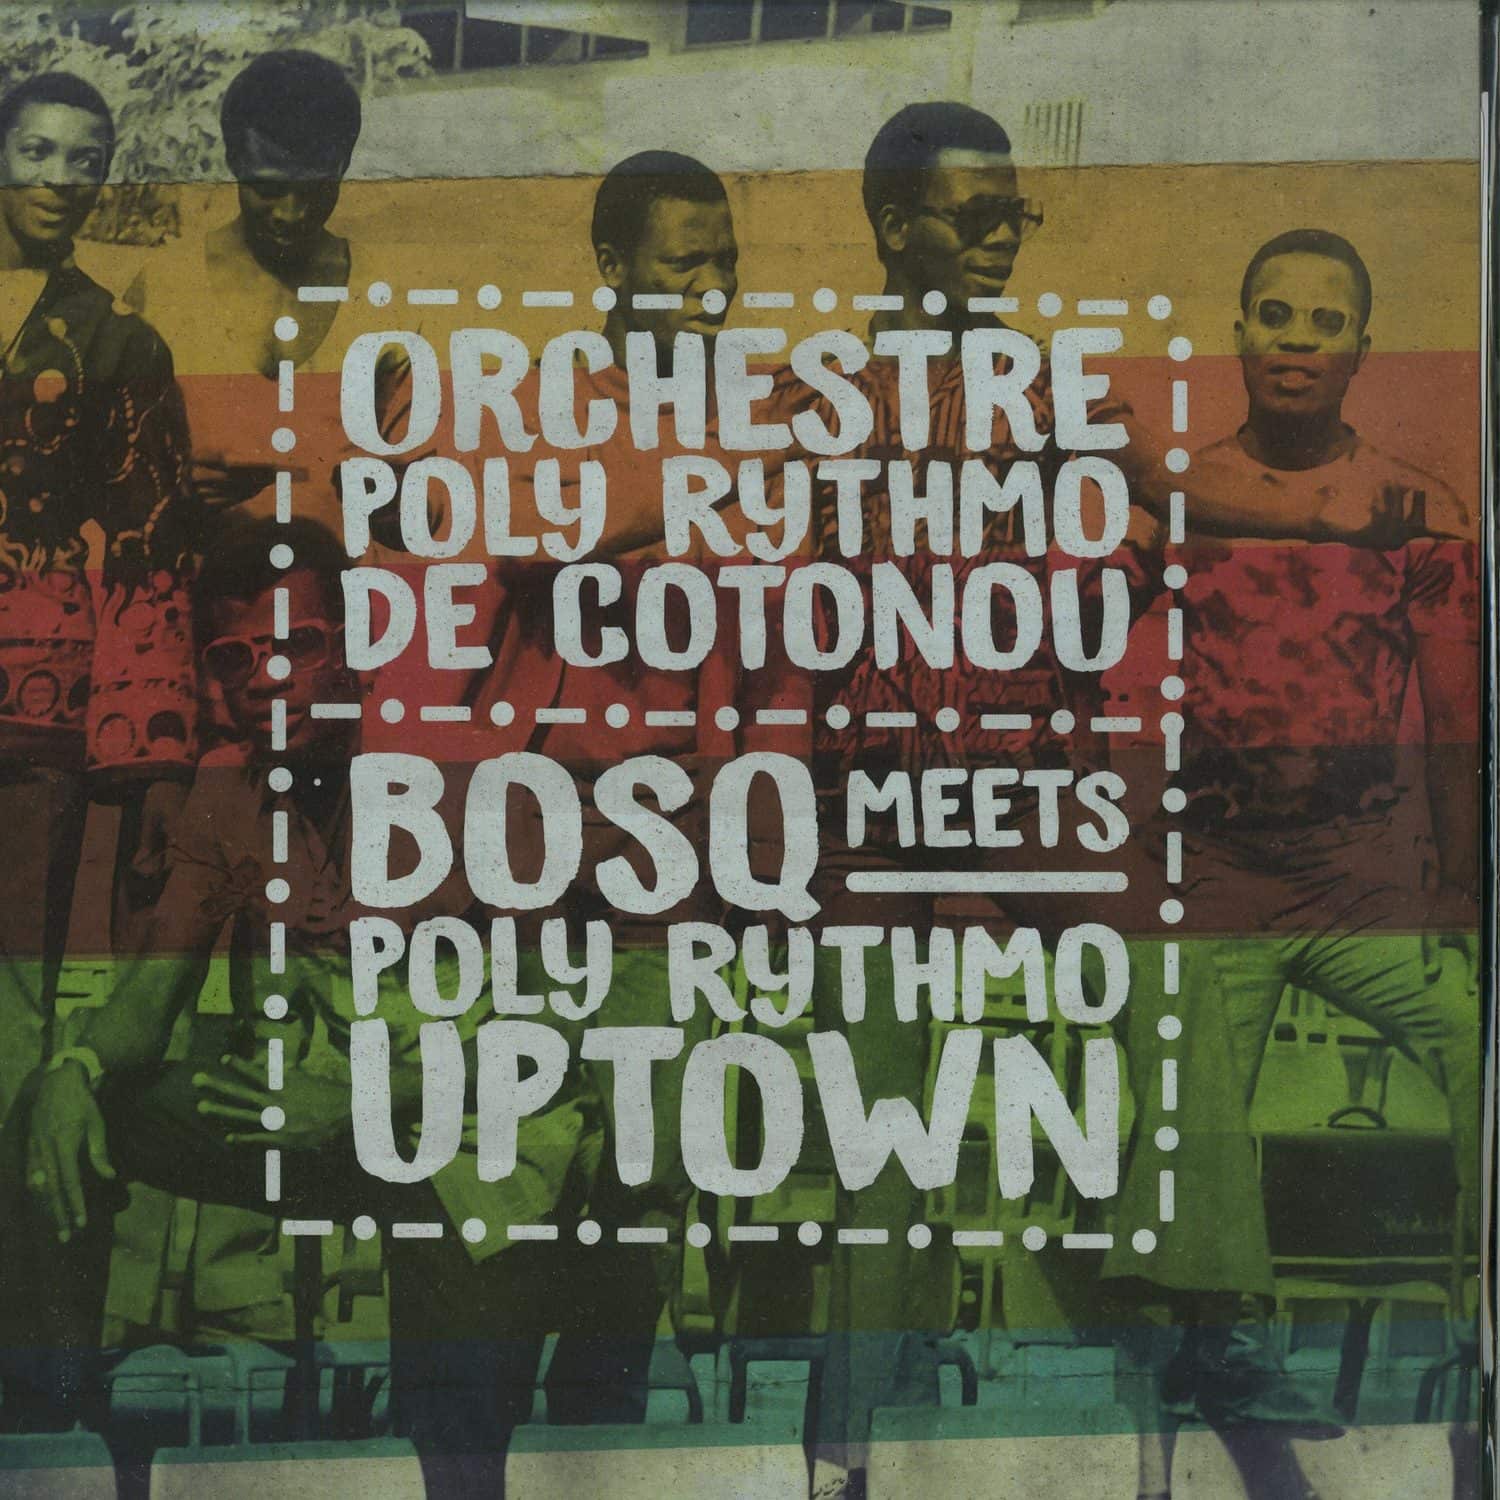 Orchestre Poly Rythmo de Cotonou - BOSQ MEETS POLY RYTHMO UPTOWN